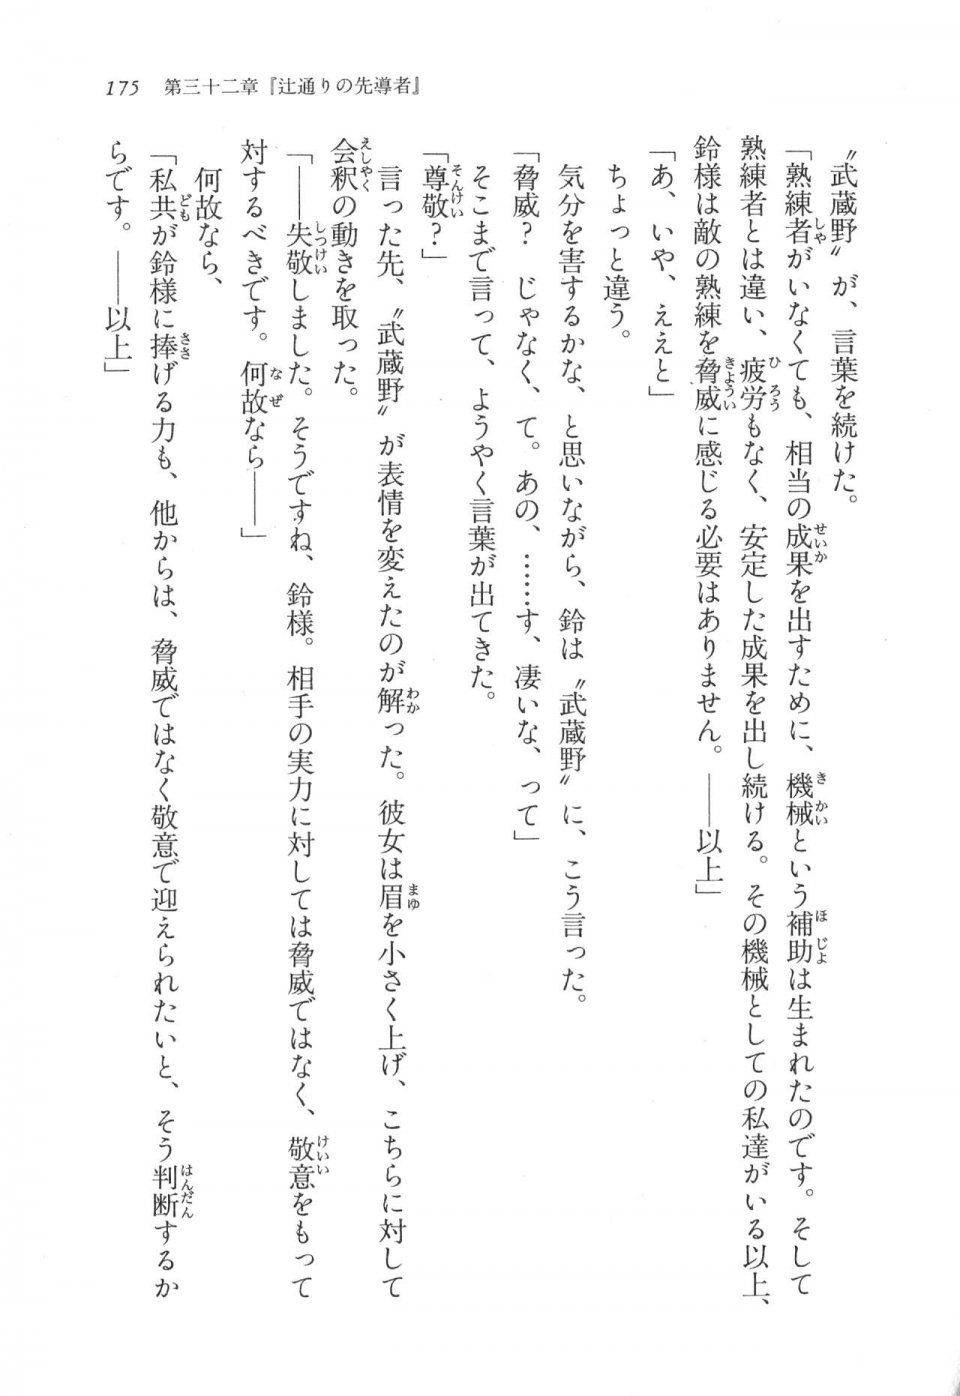 Kyoukai Senjou no Horizon LN Vol 17(7B) - Photo #175